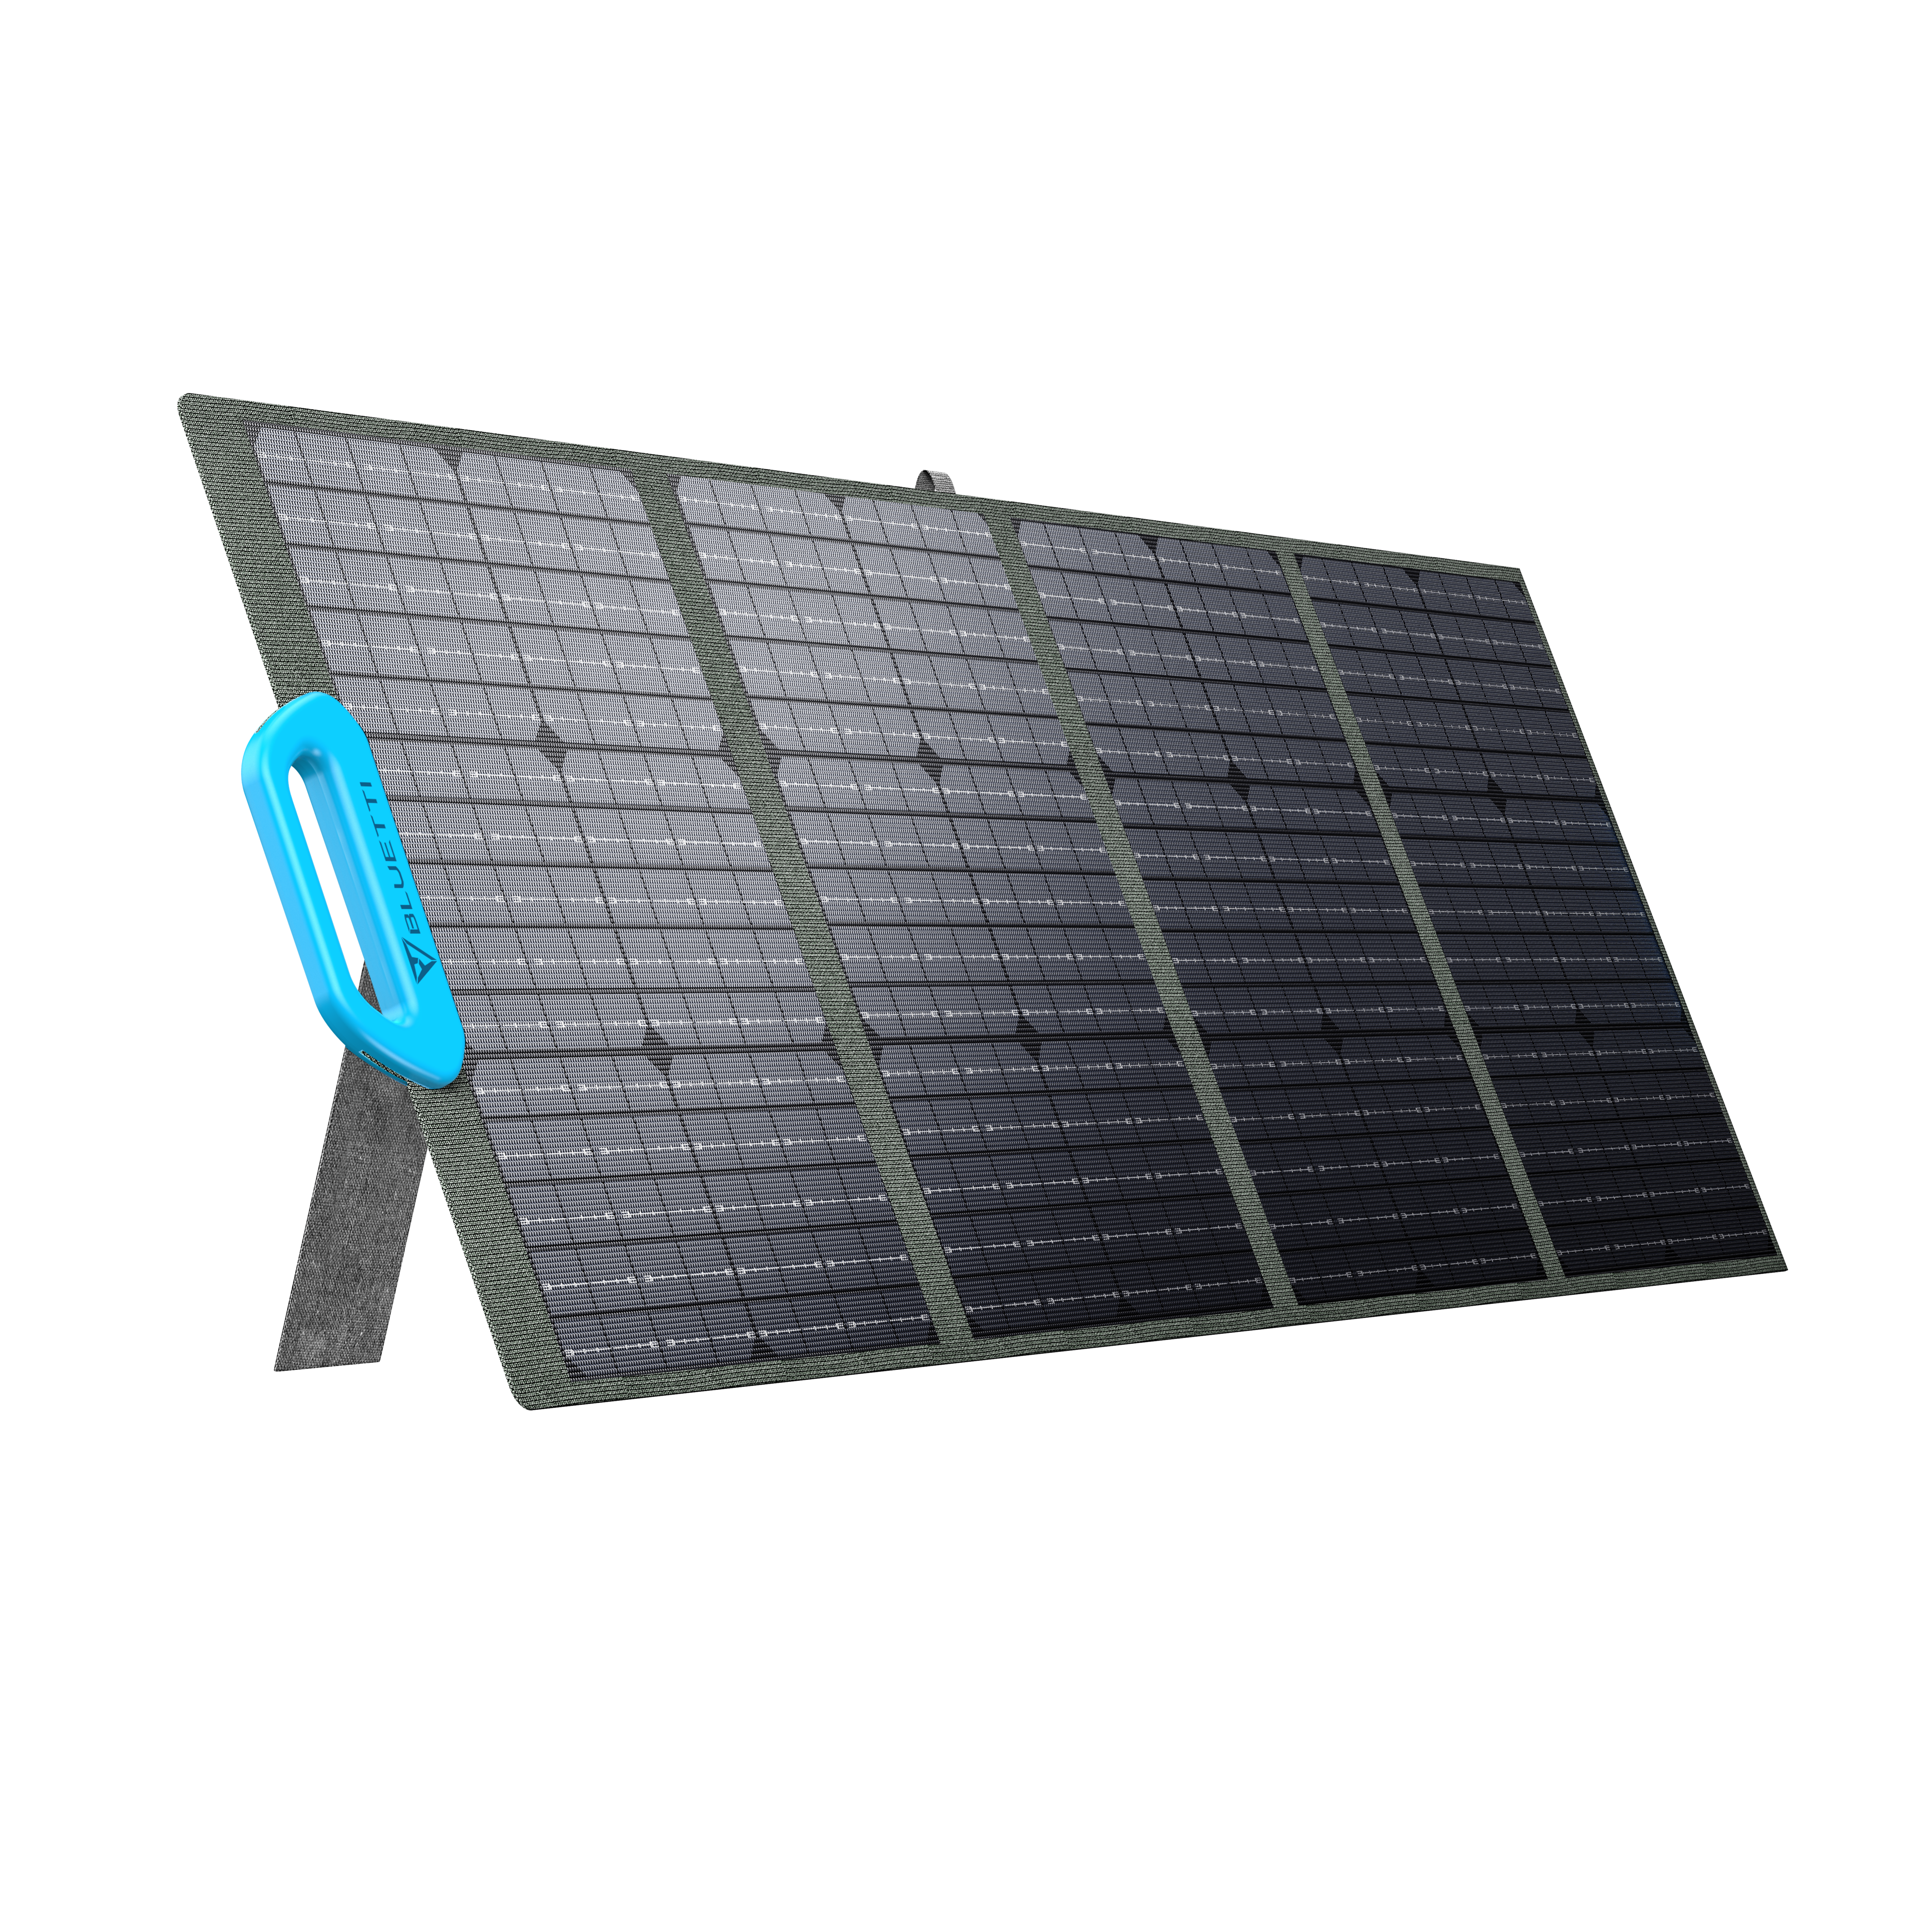 Bluetti PV120 Solpanel - Effektiv bärbar solpanel för utomhusäventyr